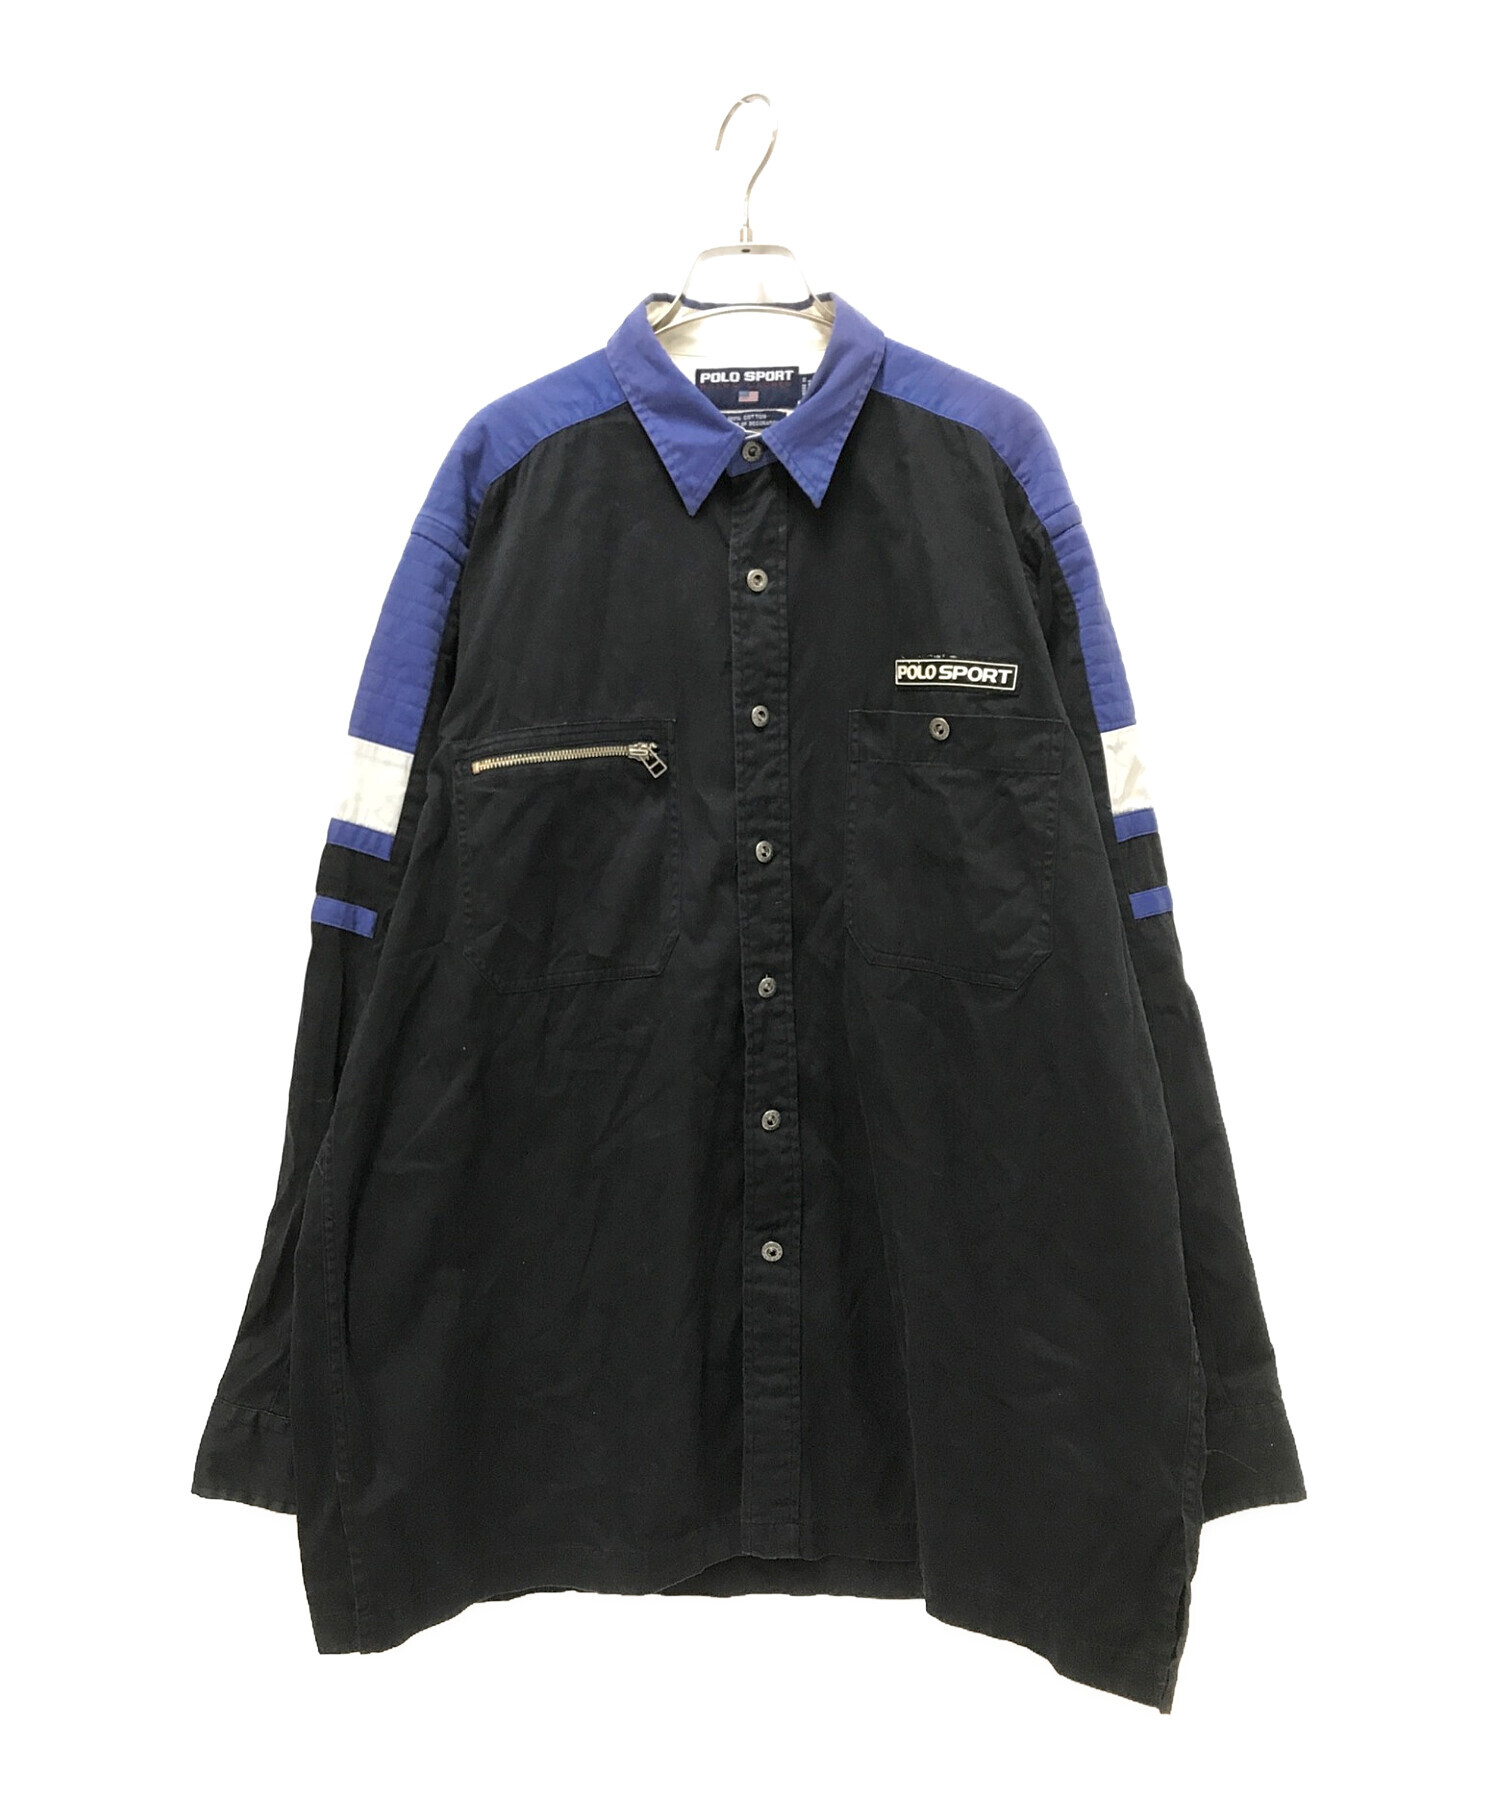 POLO SPORT (ポロスポーツ) 90's ARCTIC CHALLENGEシャツ ブラック×ブルー サイズ:L